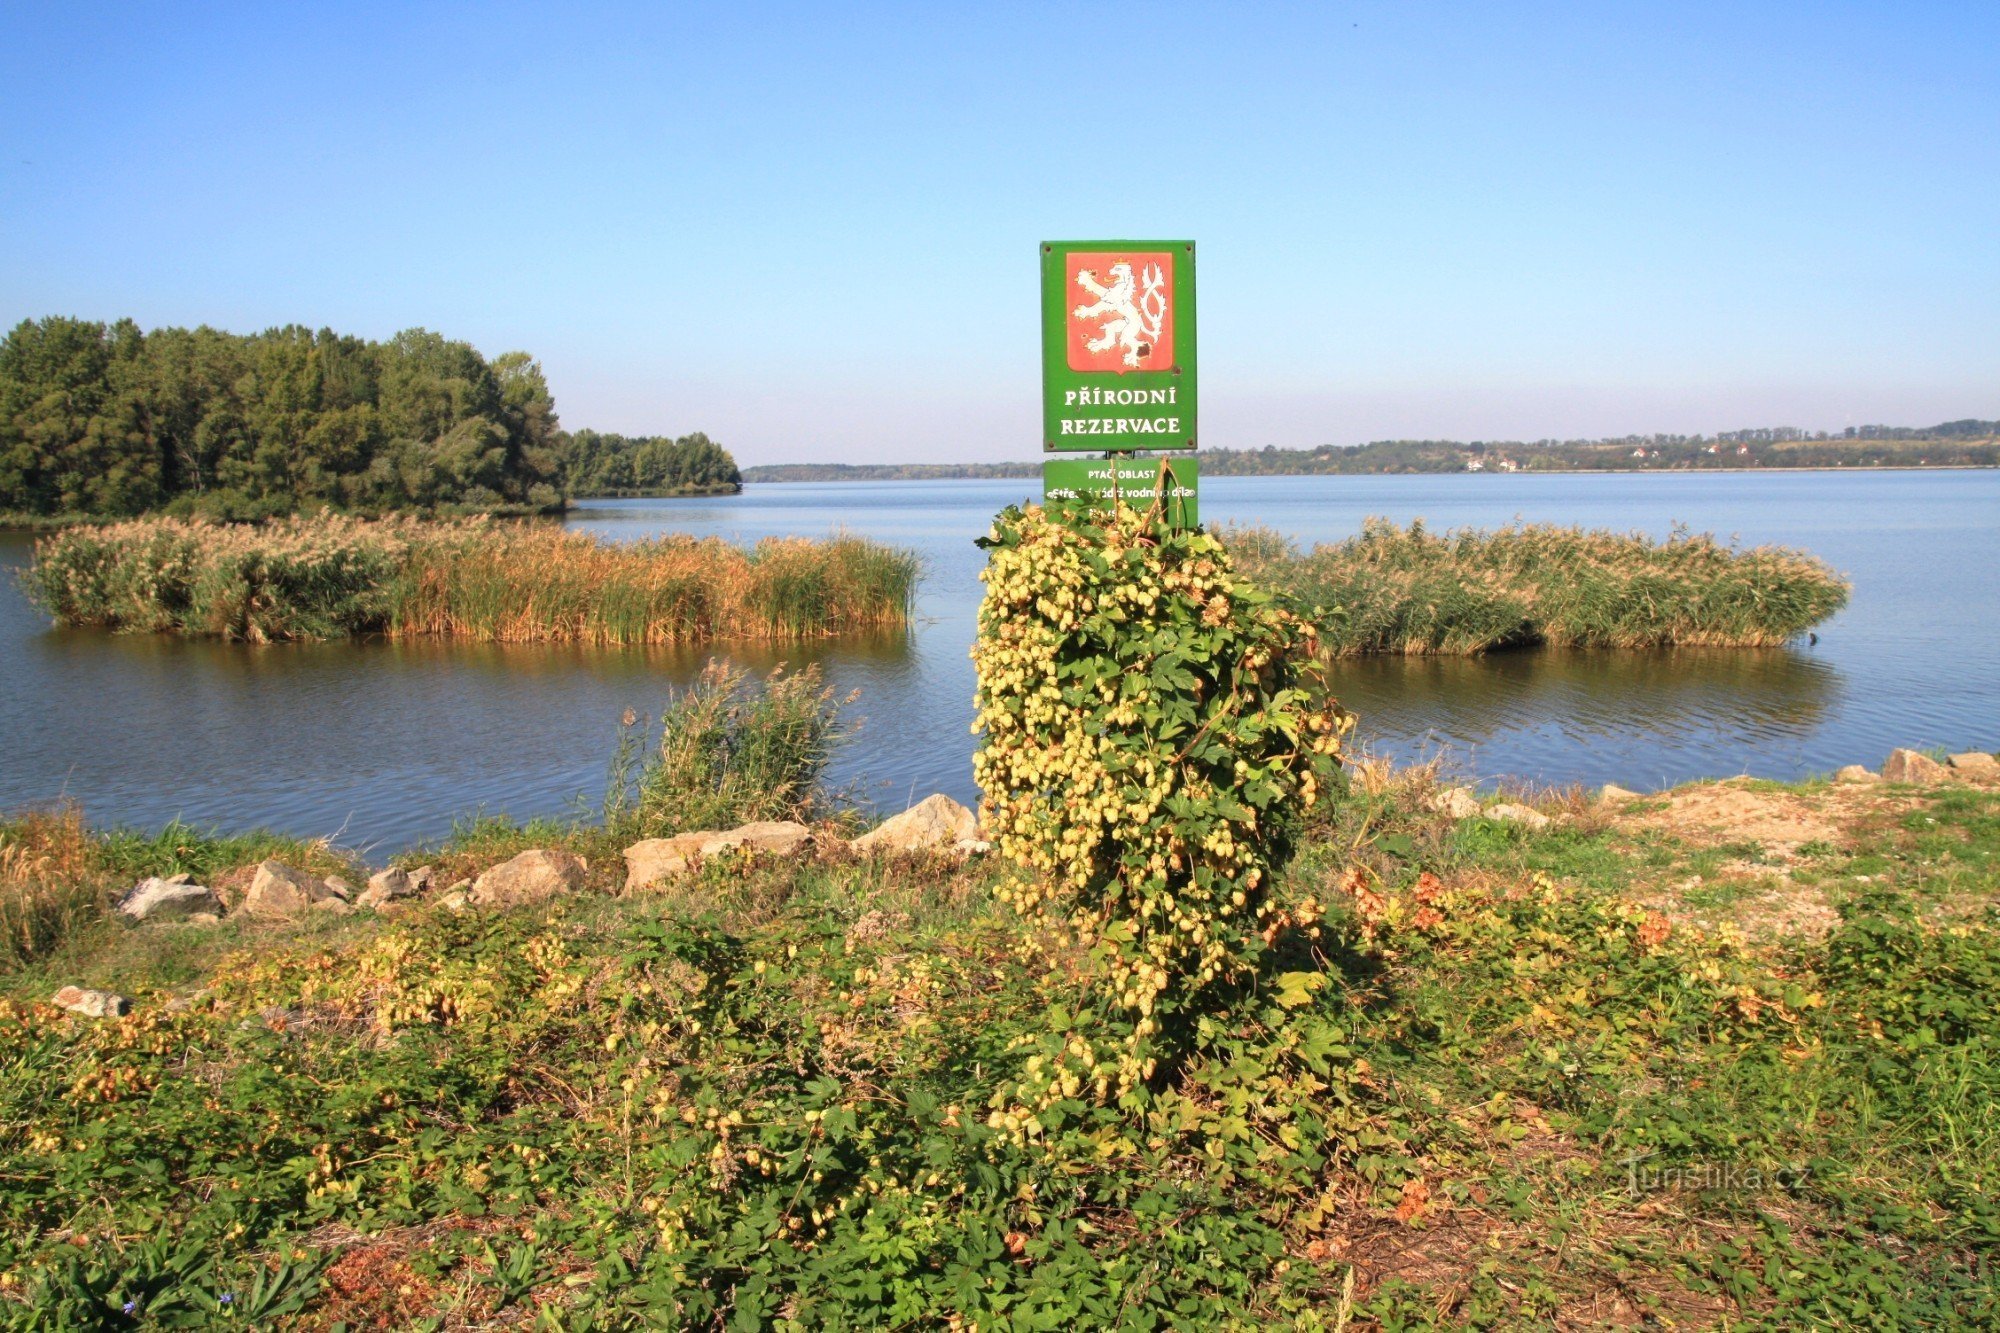 Věstonická-stuwmeer - natuurreservaat